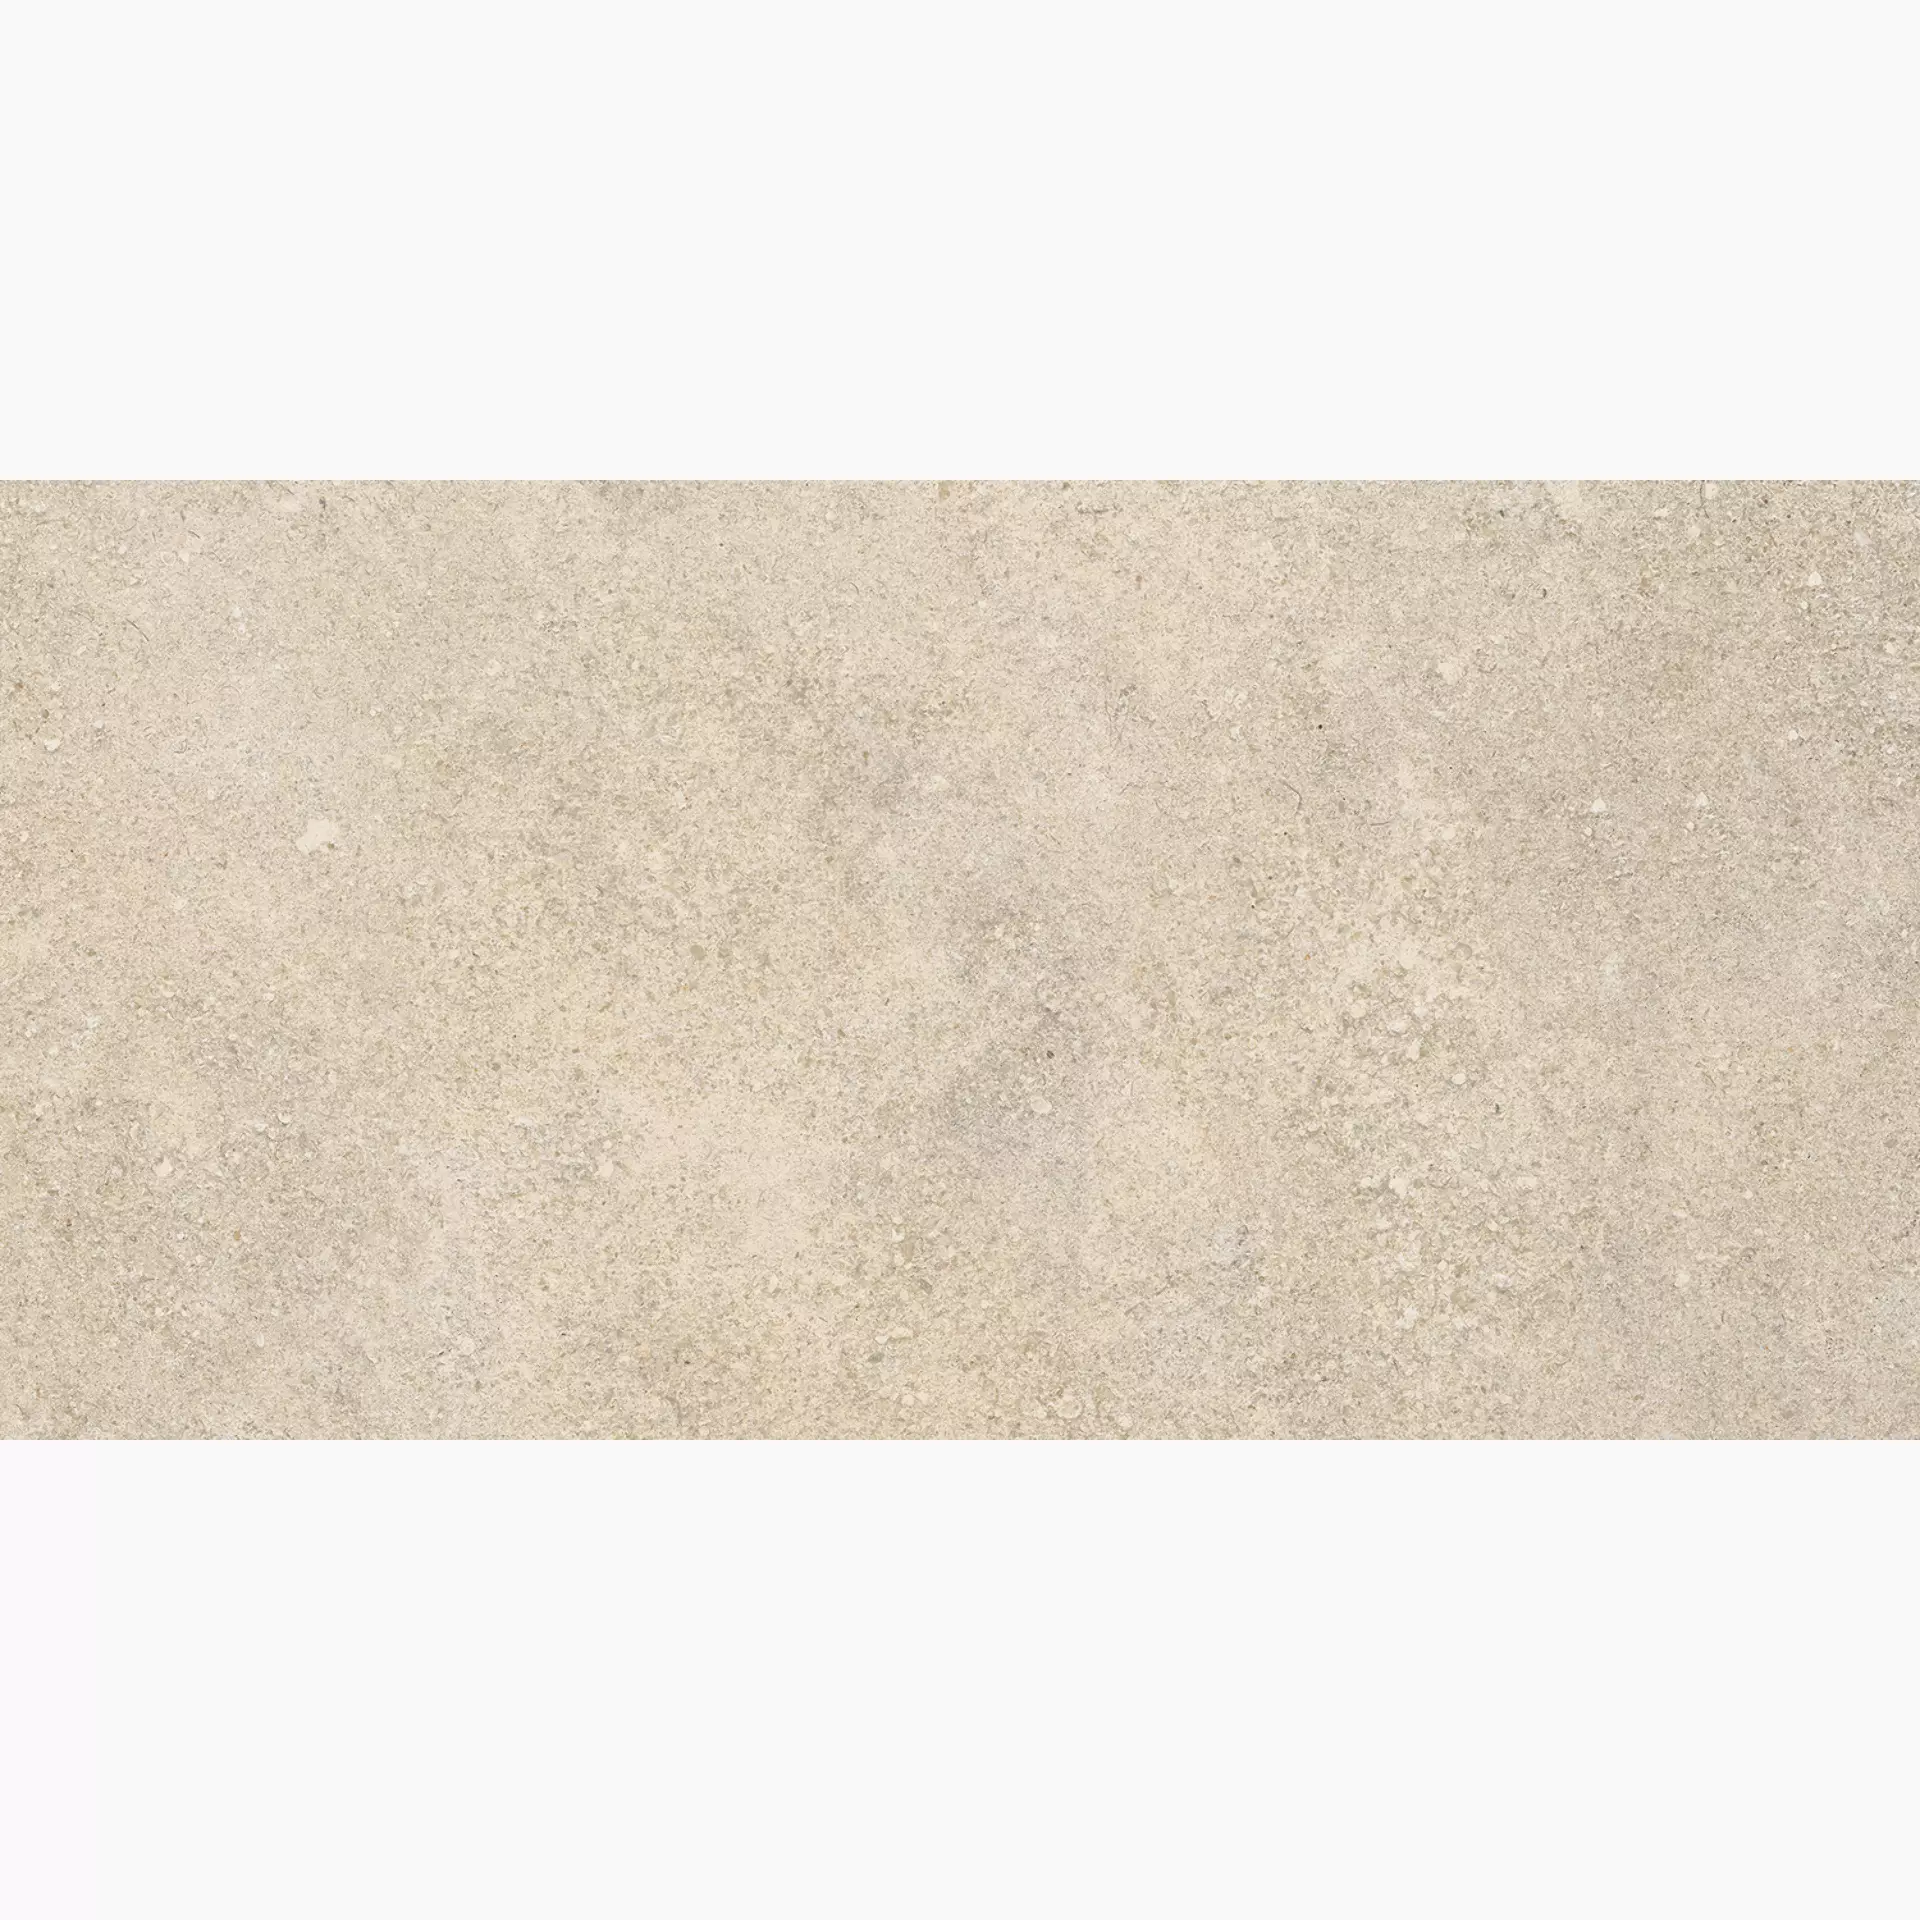 Ragno Kalkstone Sand Strutturato RAJQ 30x60cm rektifiziert 9,5mm